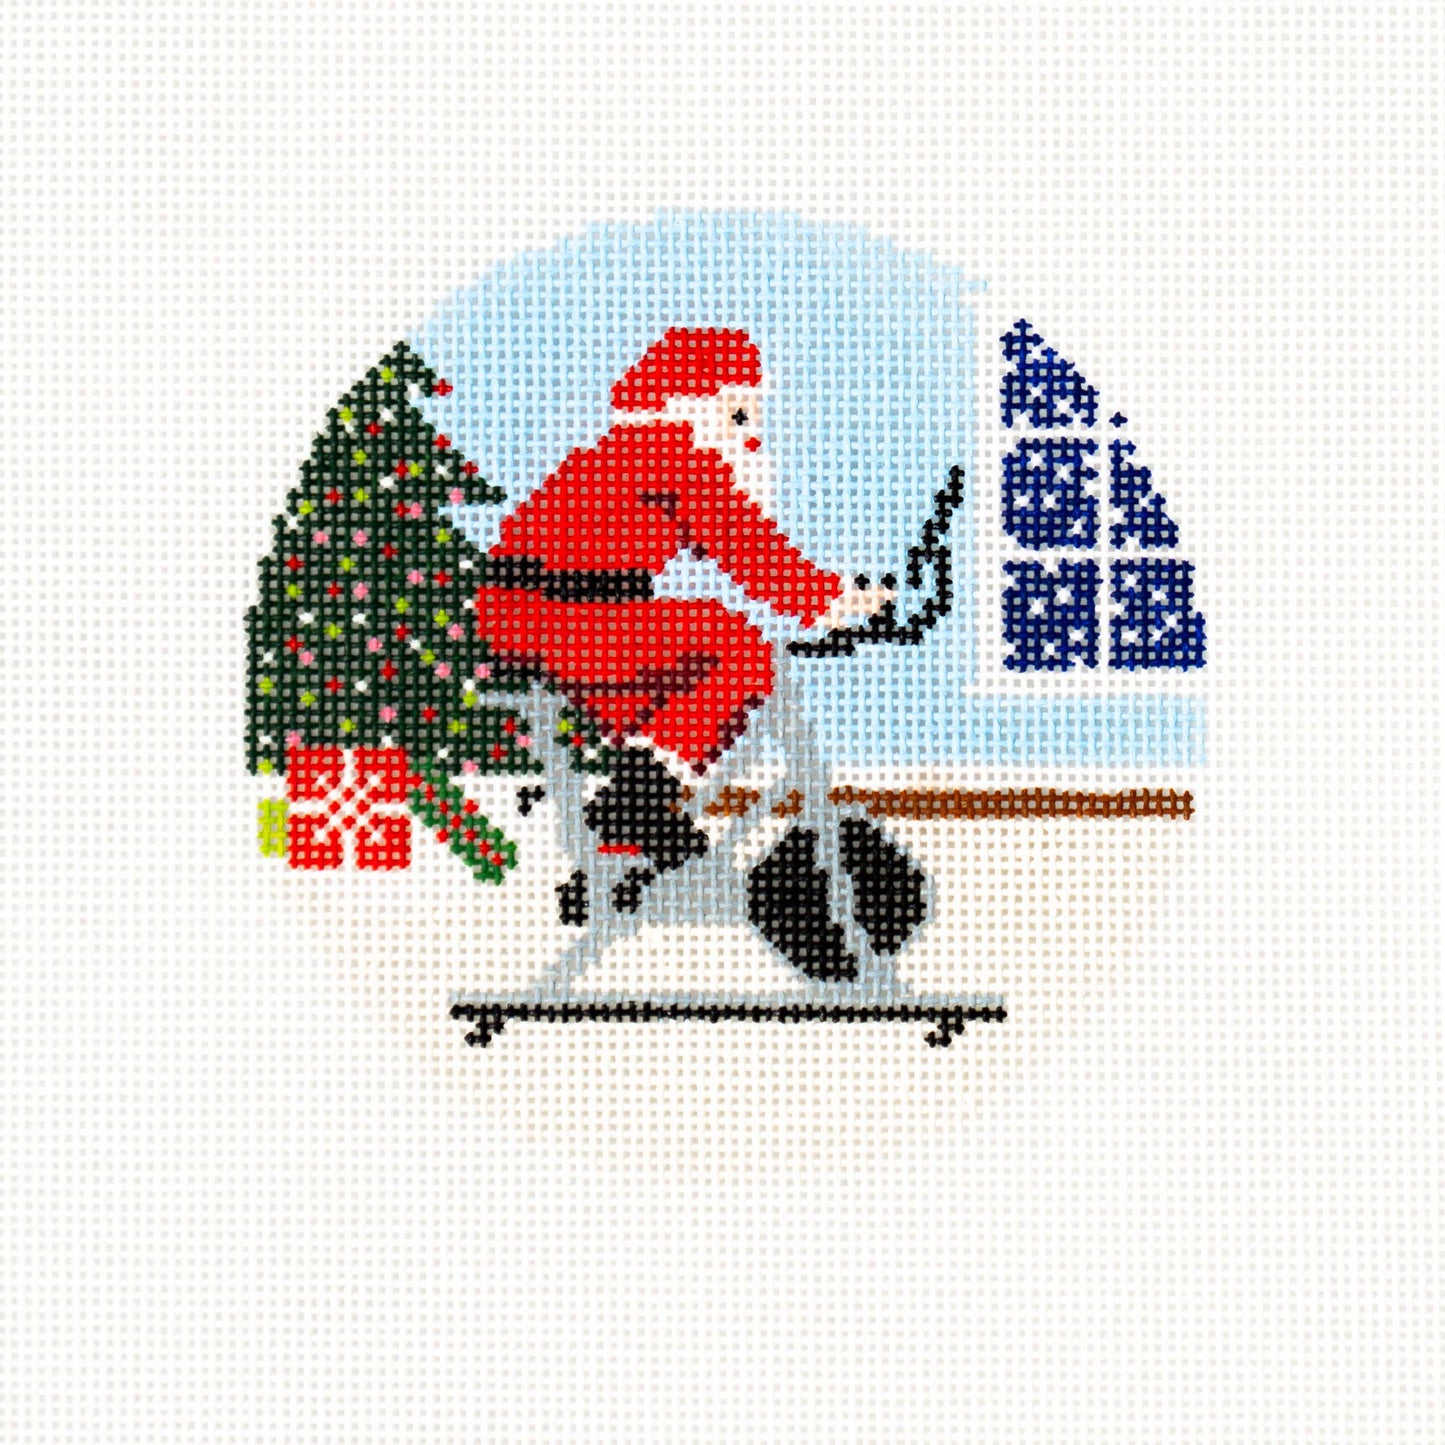 Sporty Santa Ornament - Spinning Santa